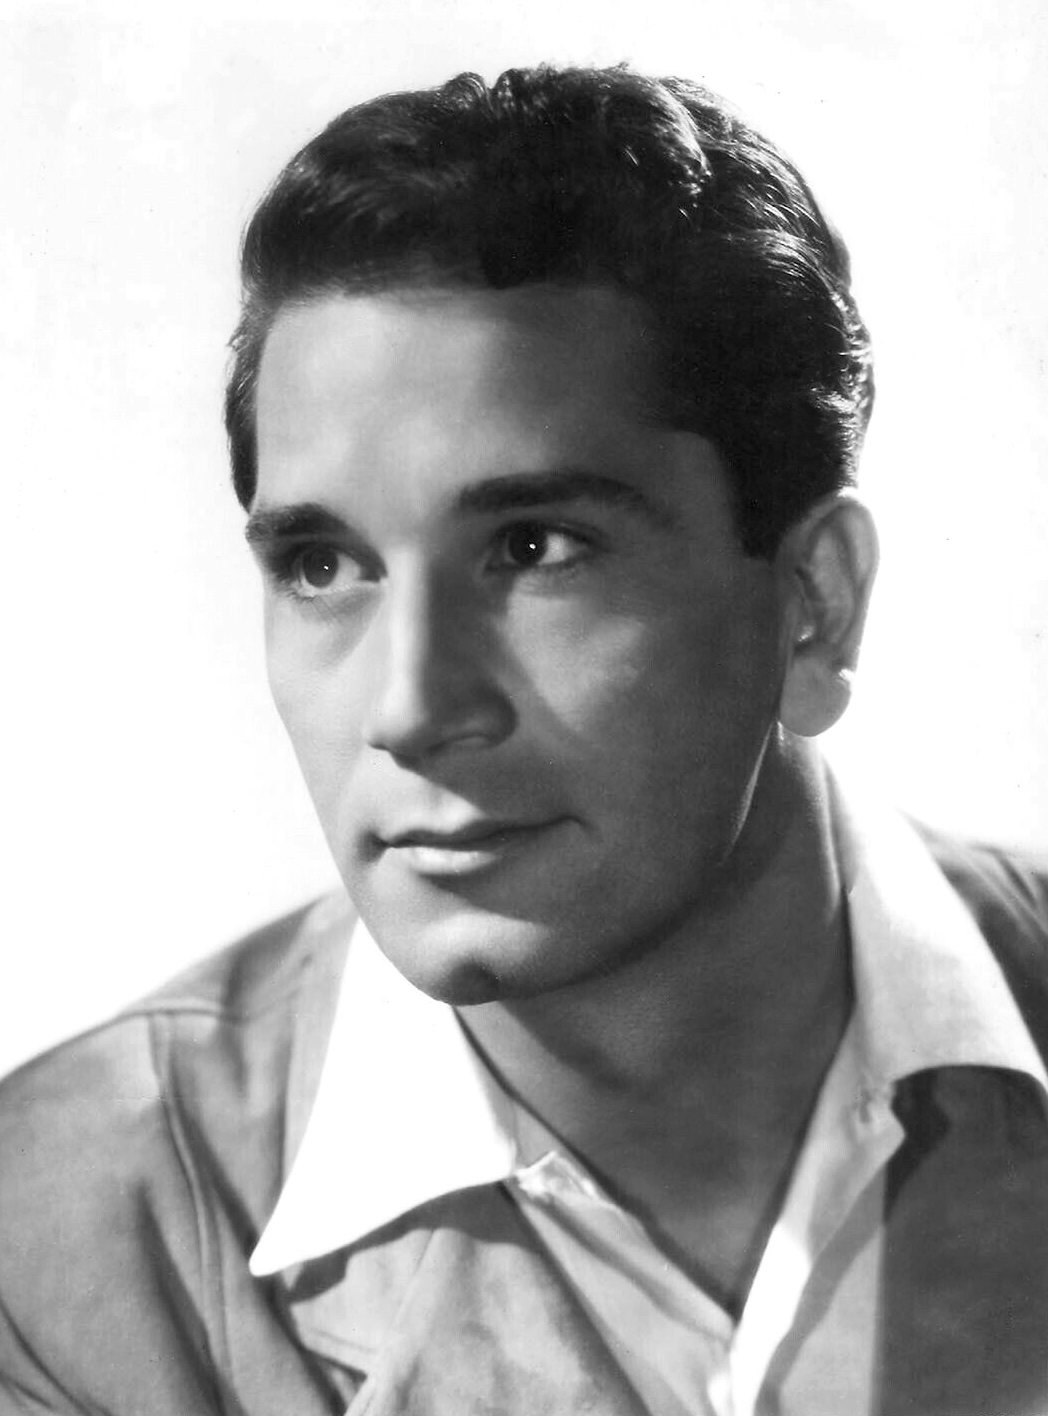 Conte in the 1940s